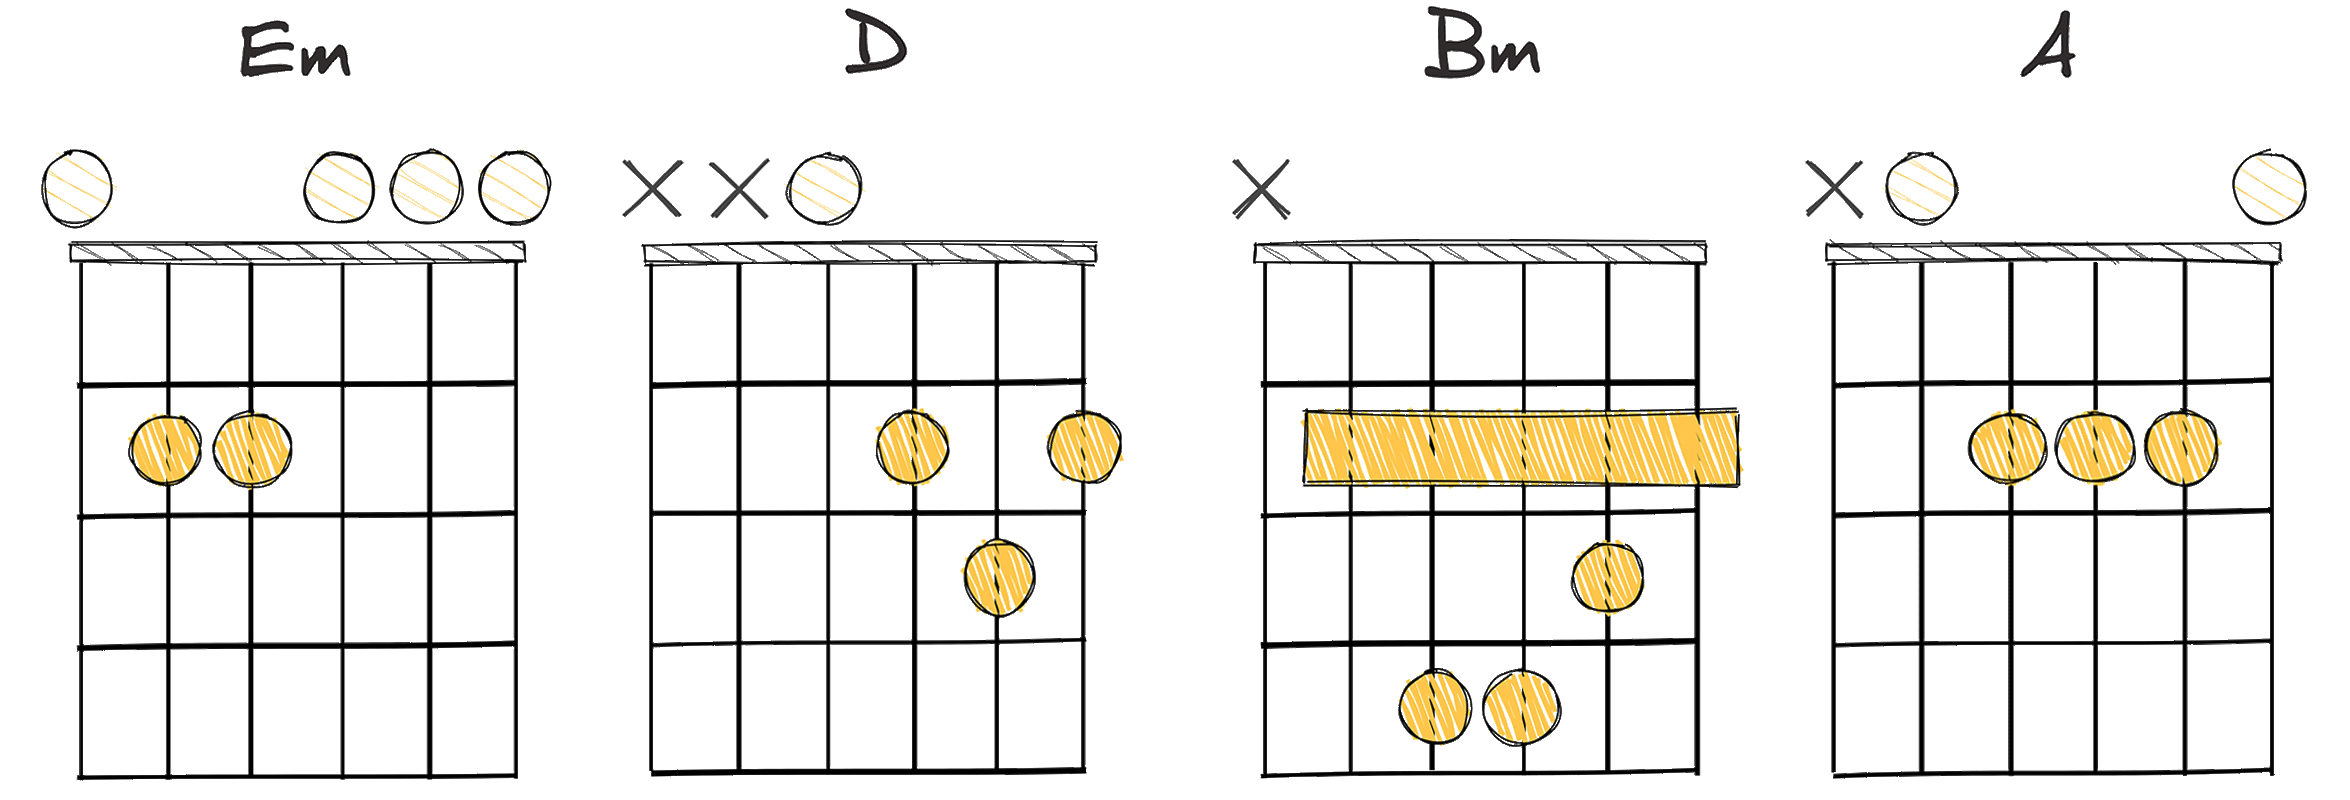 ii-I-vi-V (2-1-6-5) chords diagram